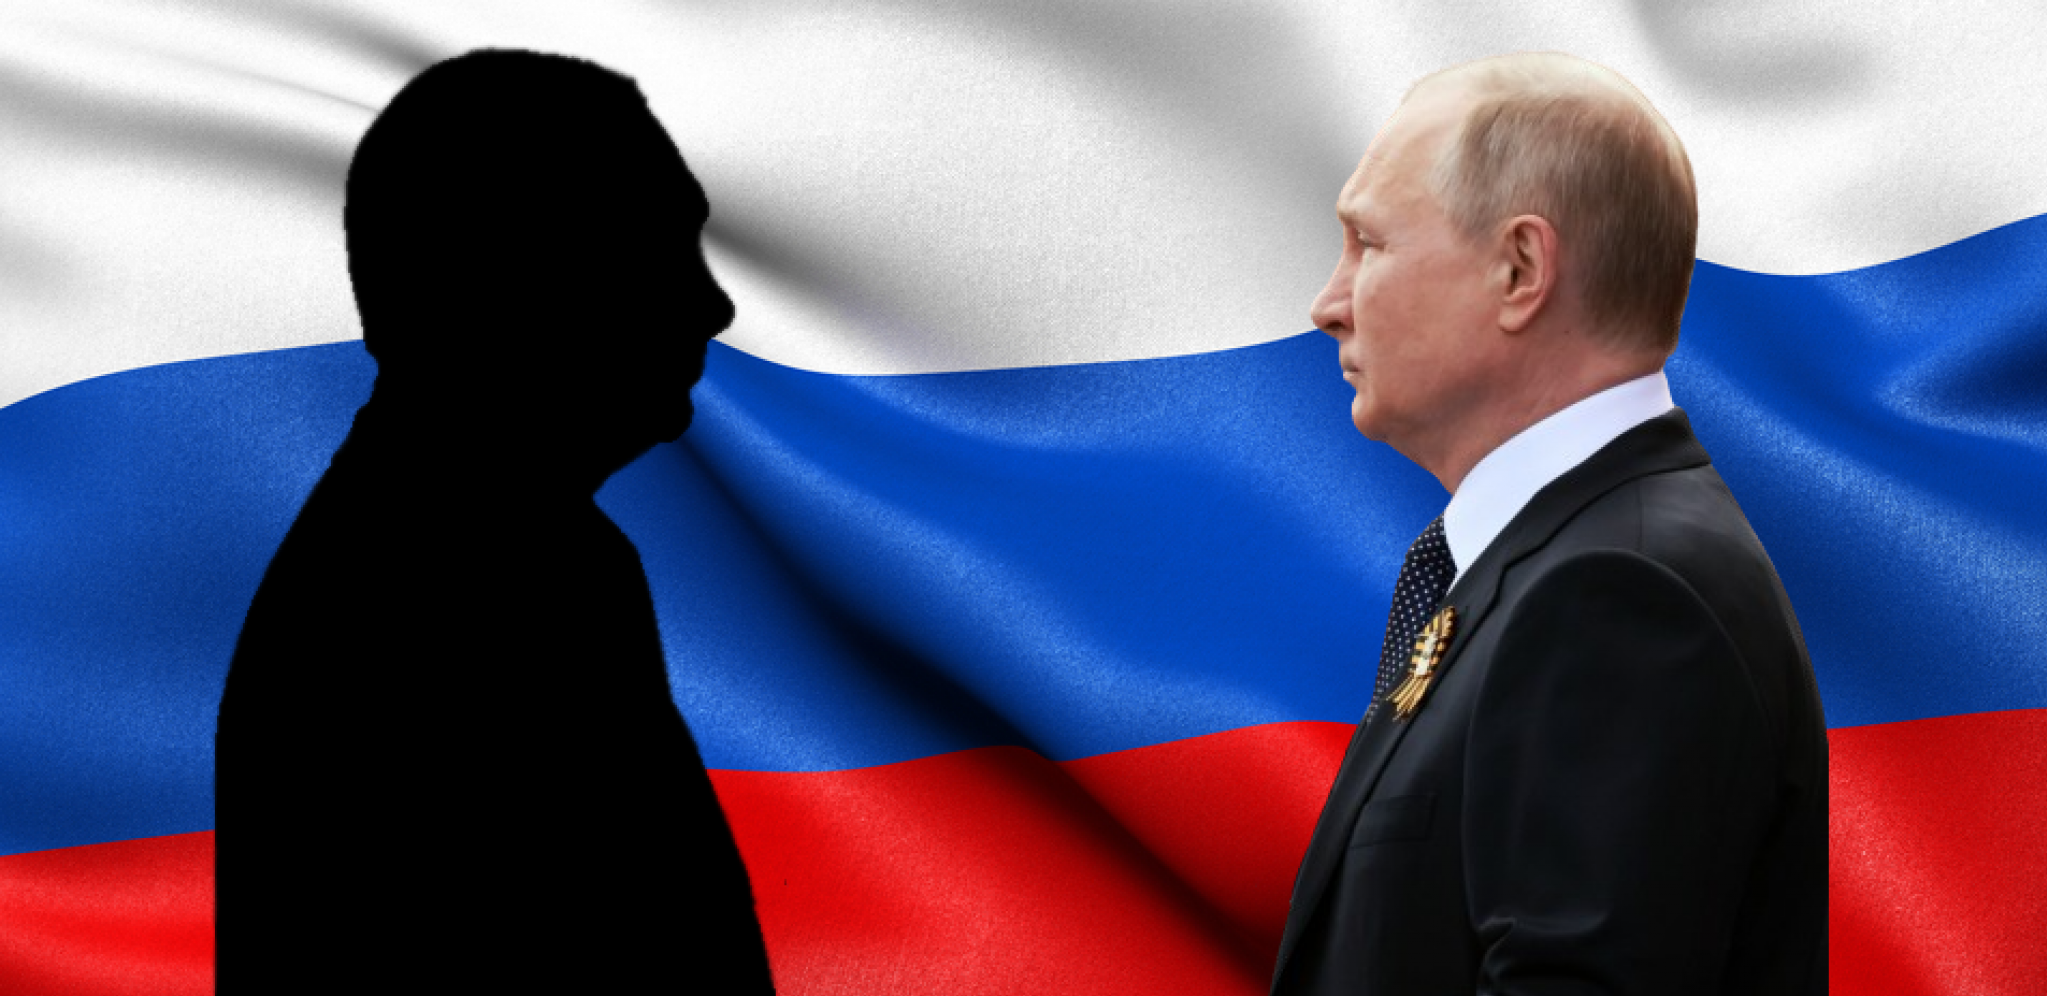 KO JE SLEDEĆI PUTIN? "Ceo život posvetio Rusiji" - mladi funkcioner bi mogao da nasledi aktuelnog predsednika Rusije